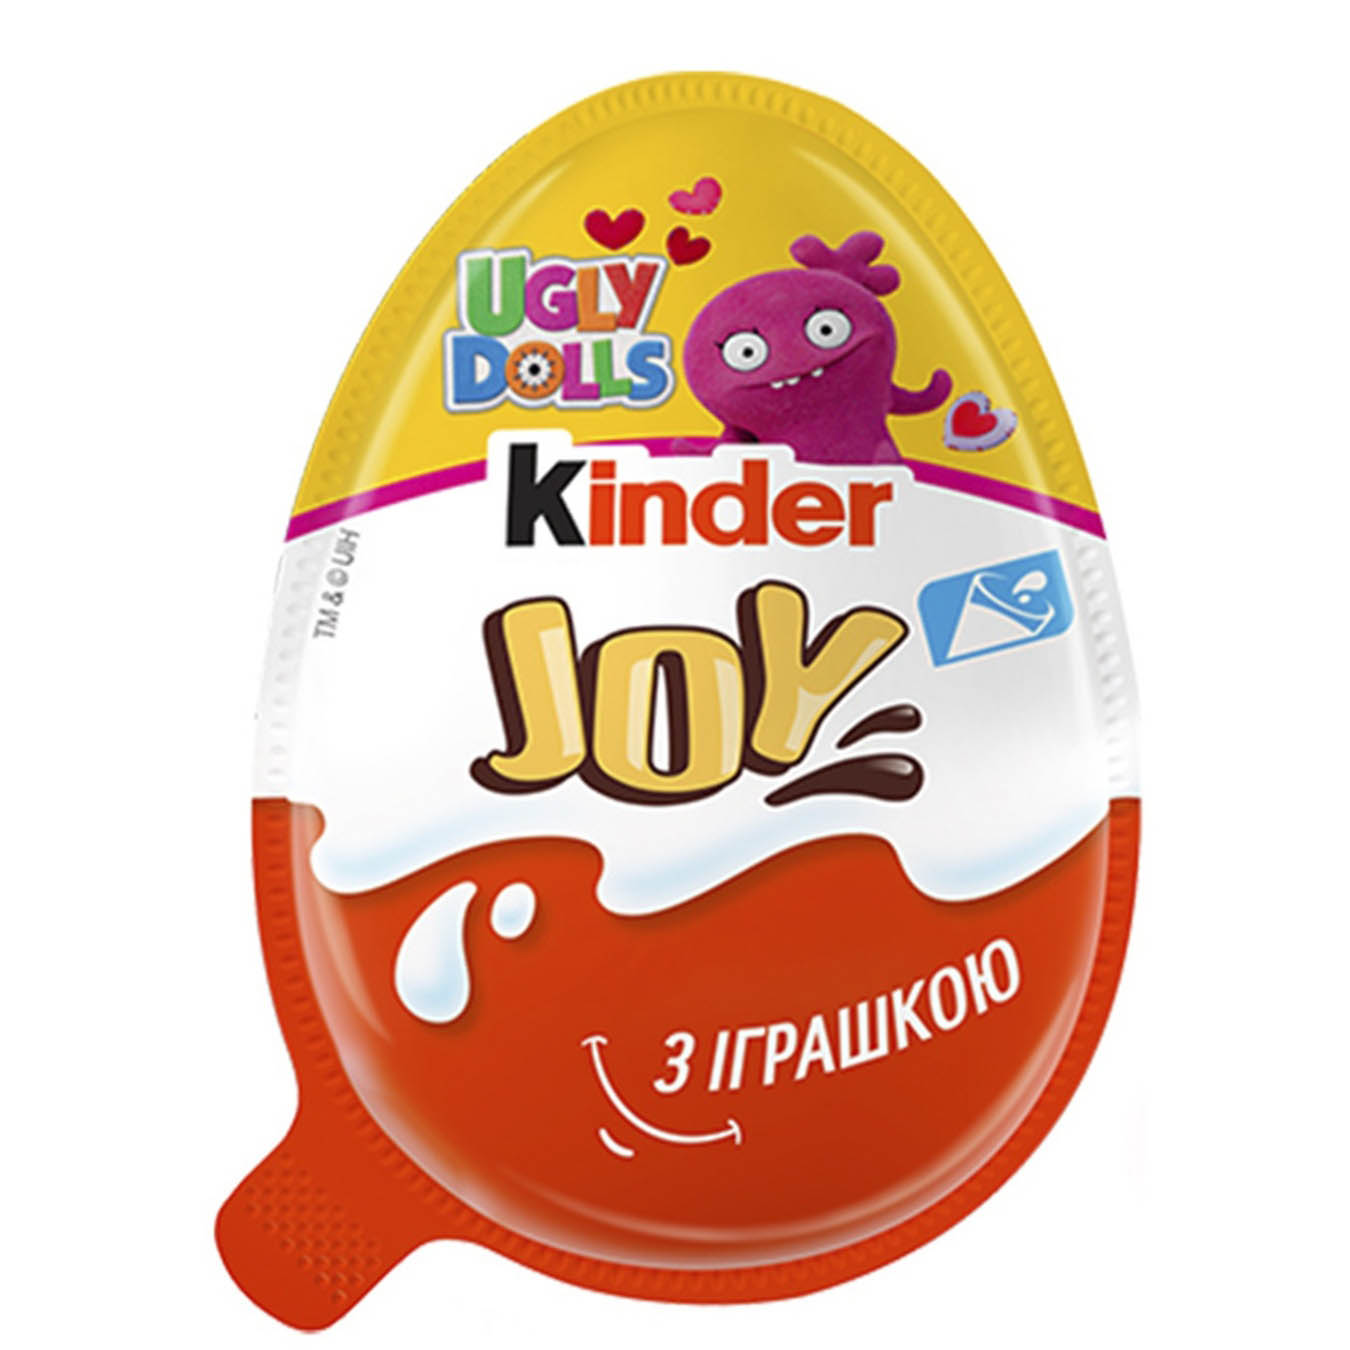 Яйцо Kinder Joy в ассортименте Классический с игрушкой 20г  2